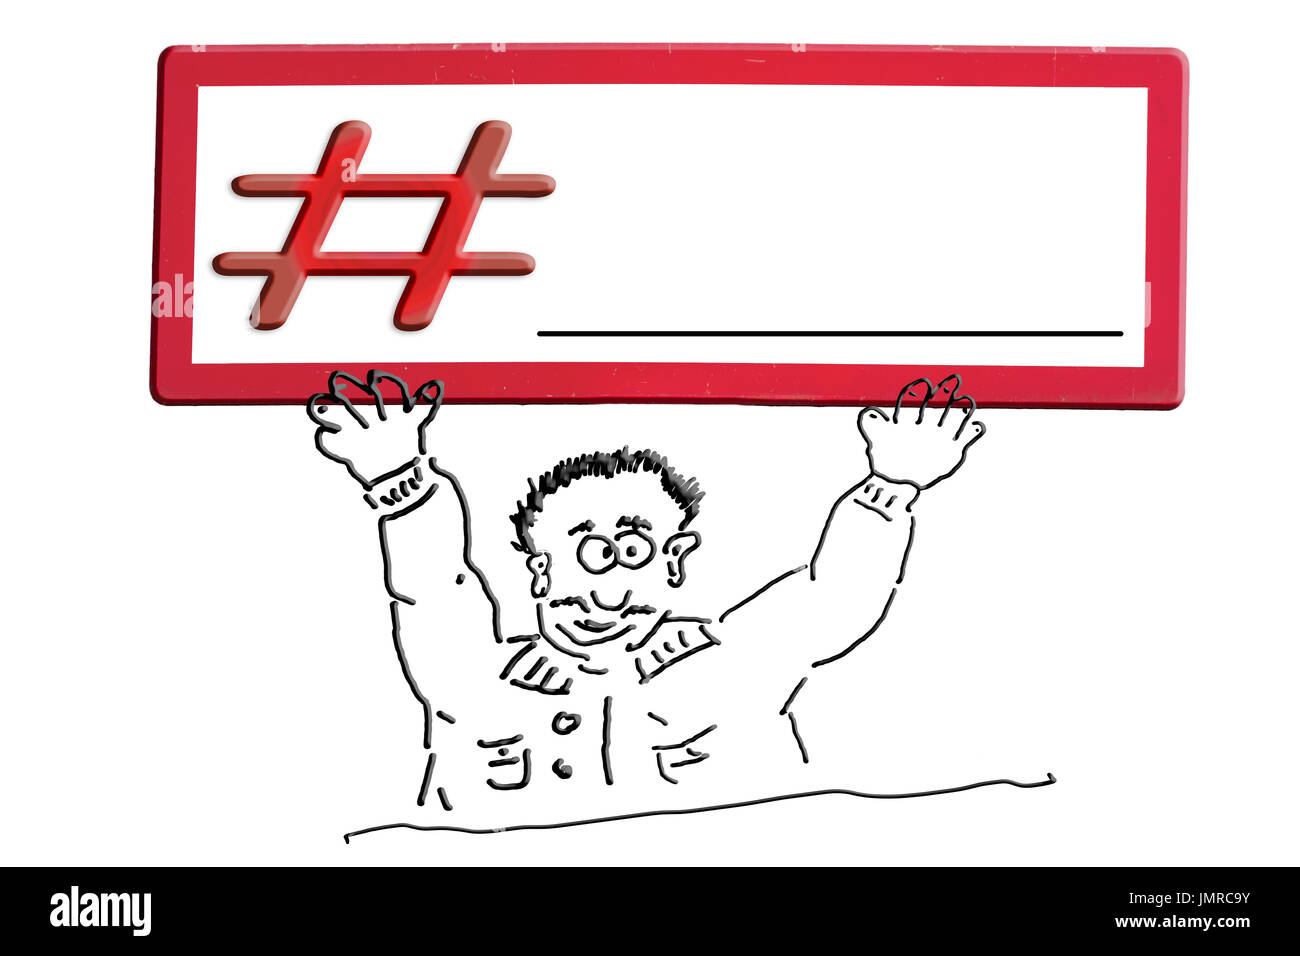 Handzeichnung Einer Werbefigur Comic Figur Oder Strich Zeichnen Cartoon Figur Mit Einem Schild Uber Seinem Kopf Mit Inschrift Hashtag Stockfotografie Alamy